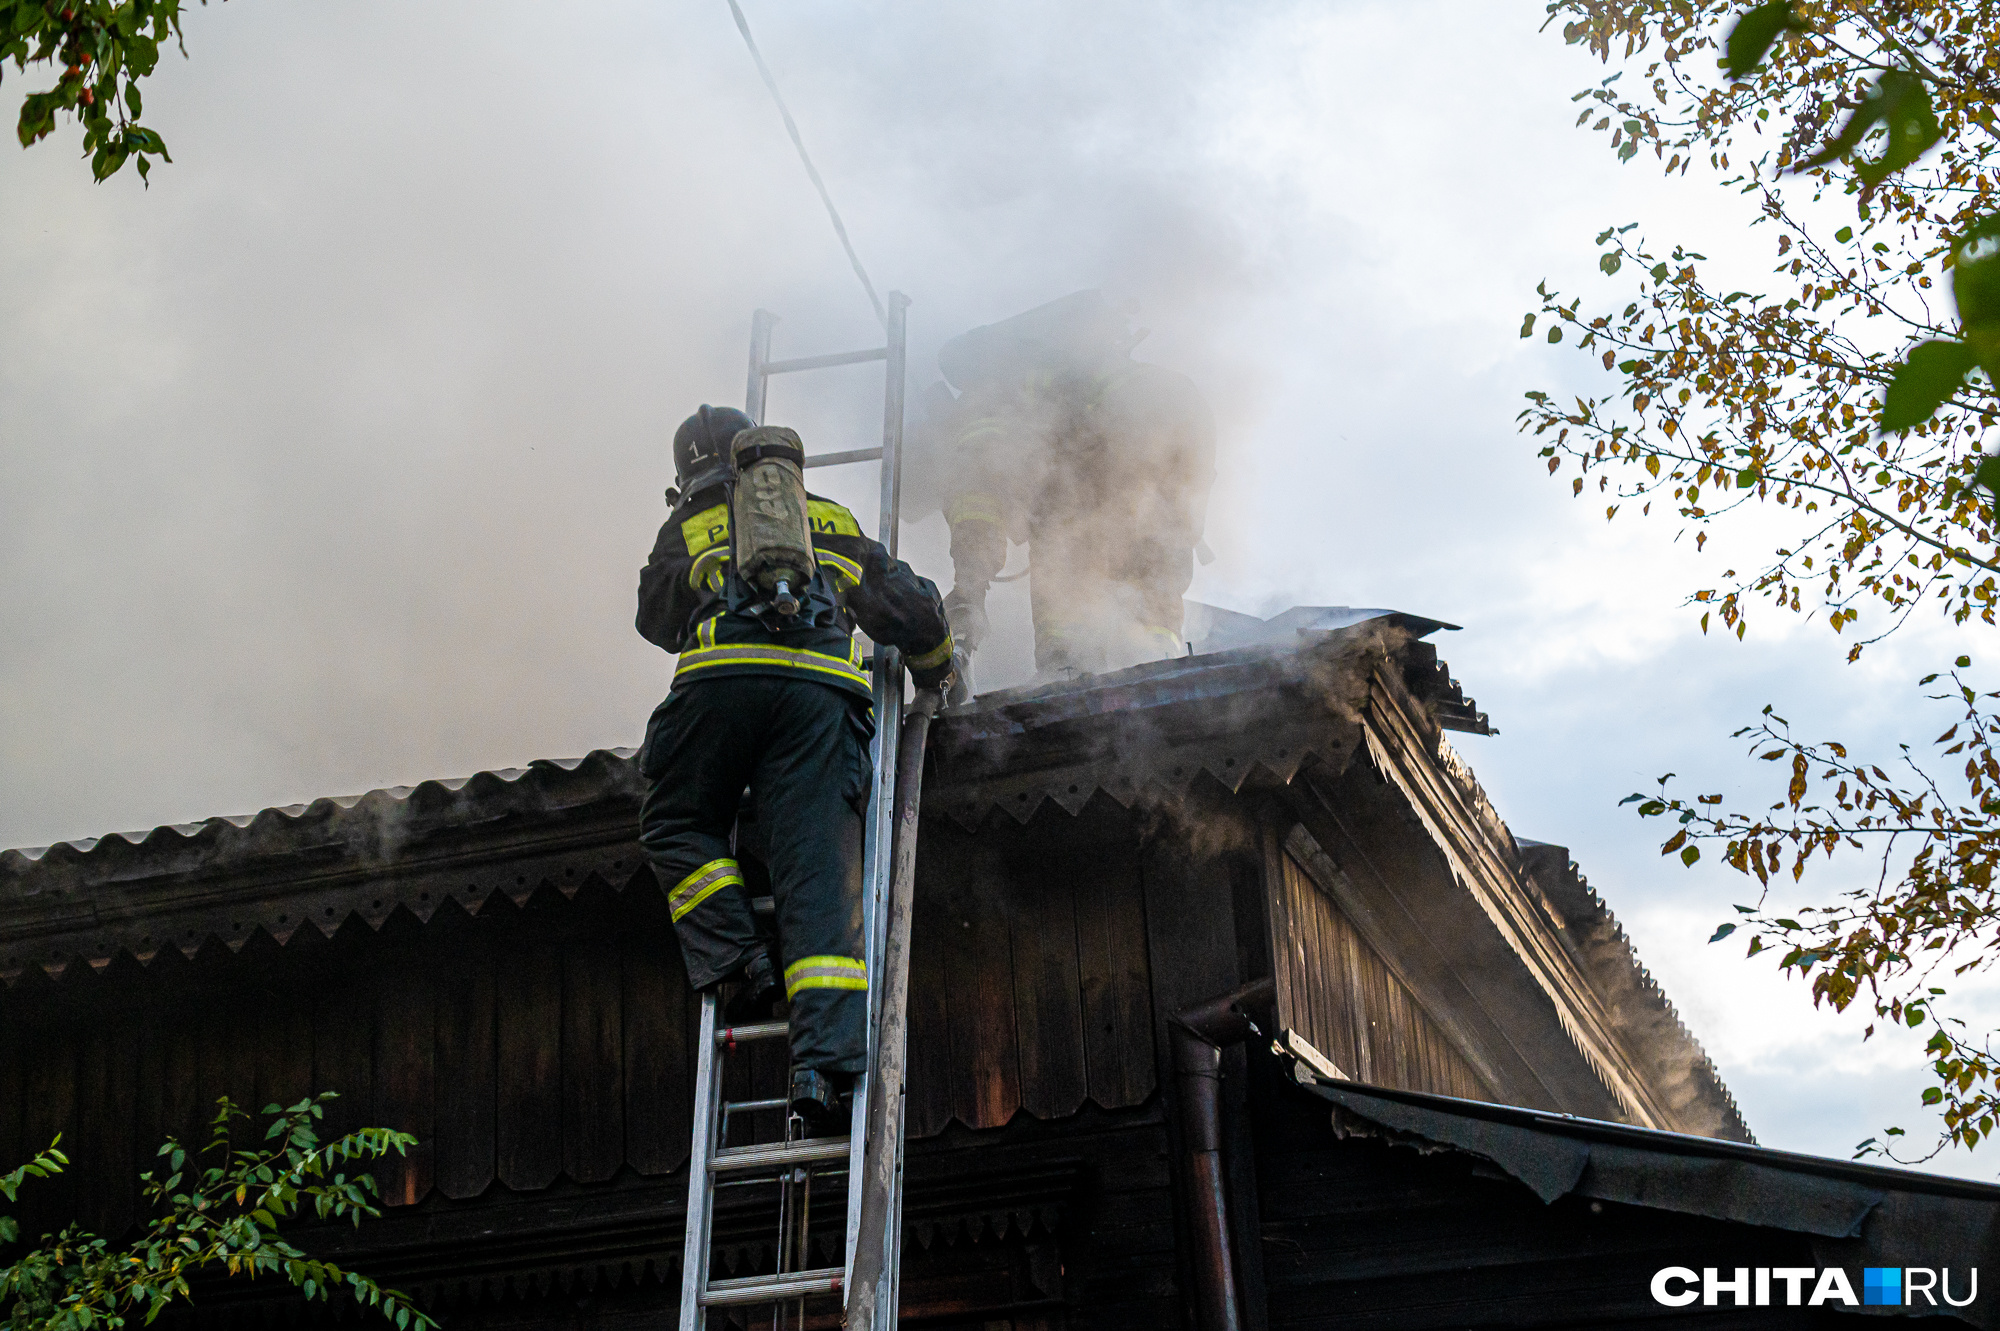 Пожарные спасли женщину из горящего дома в Забайкалье